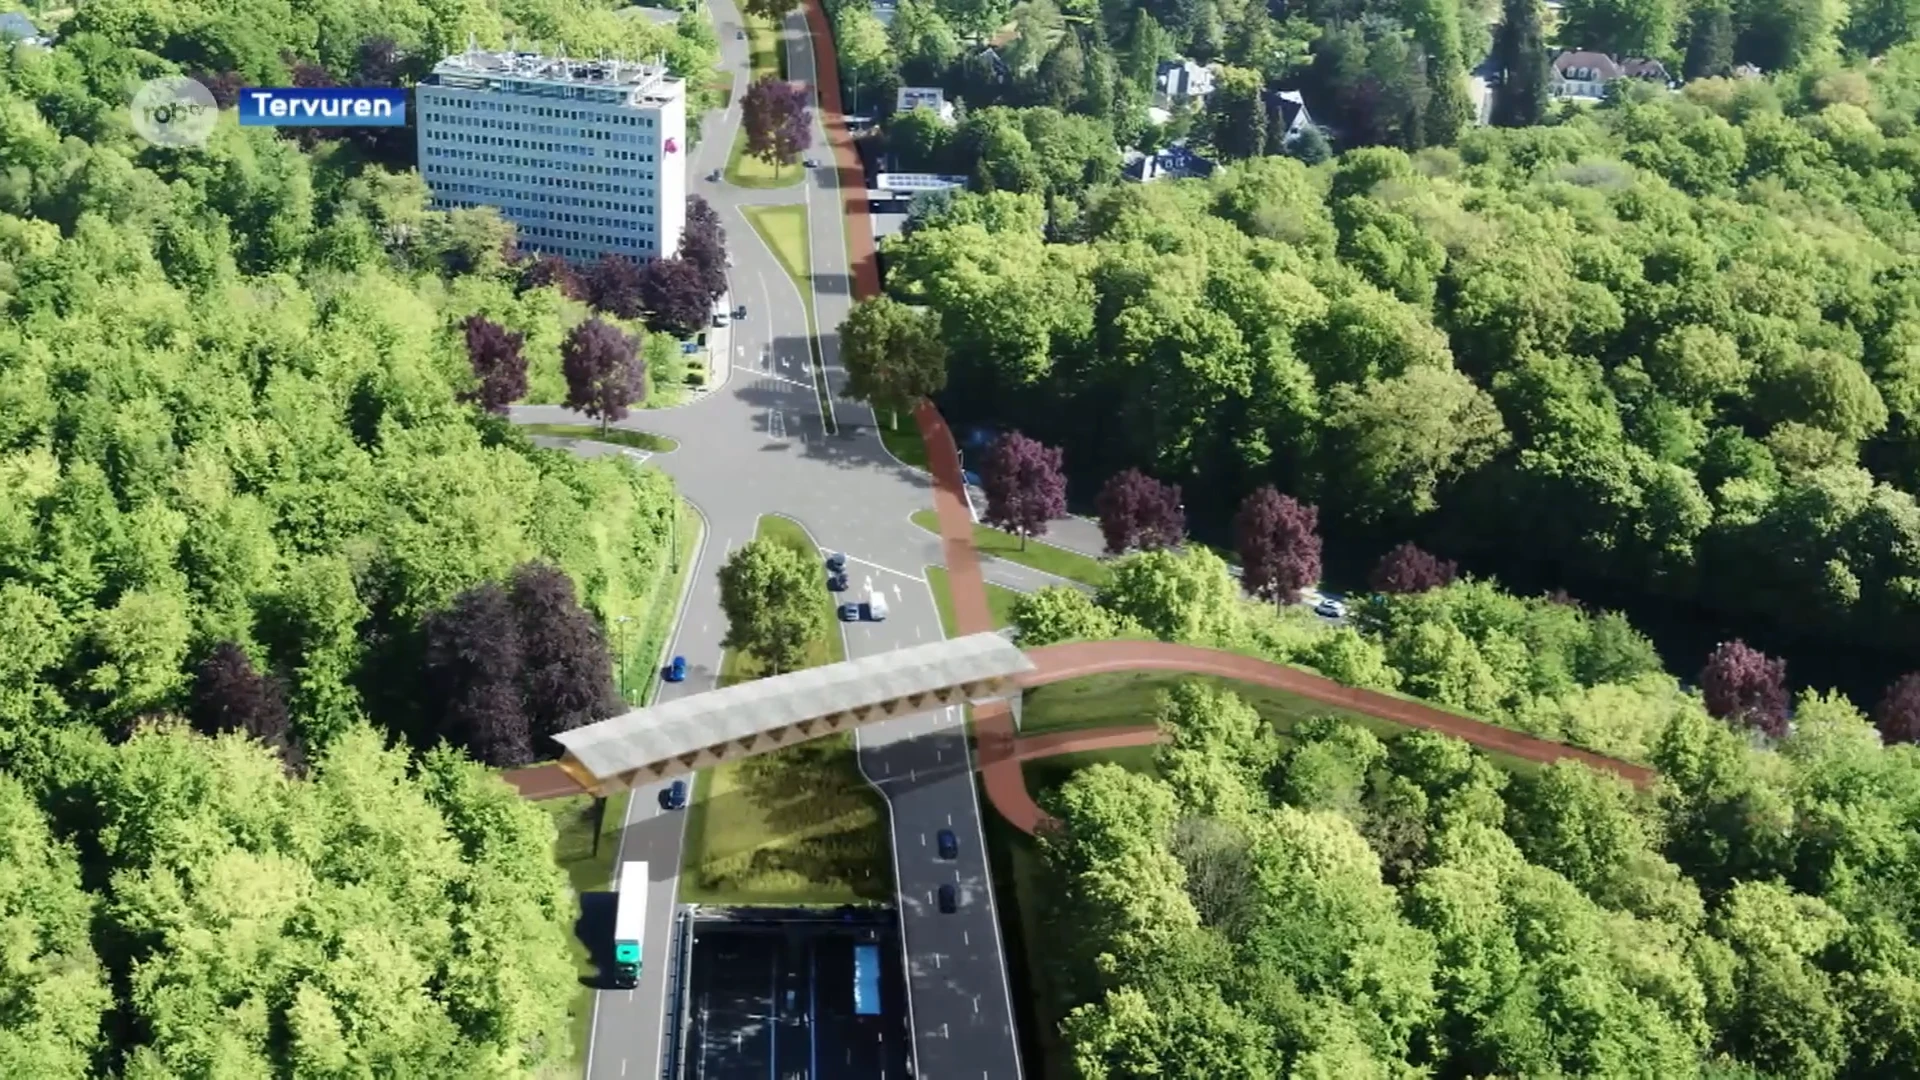 Voorbereidende werken voor fietsbrug over Vierarmenkruispunt in Tervuren gestart